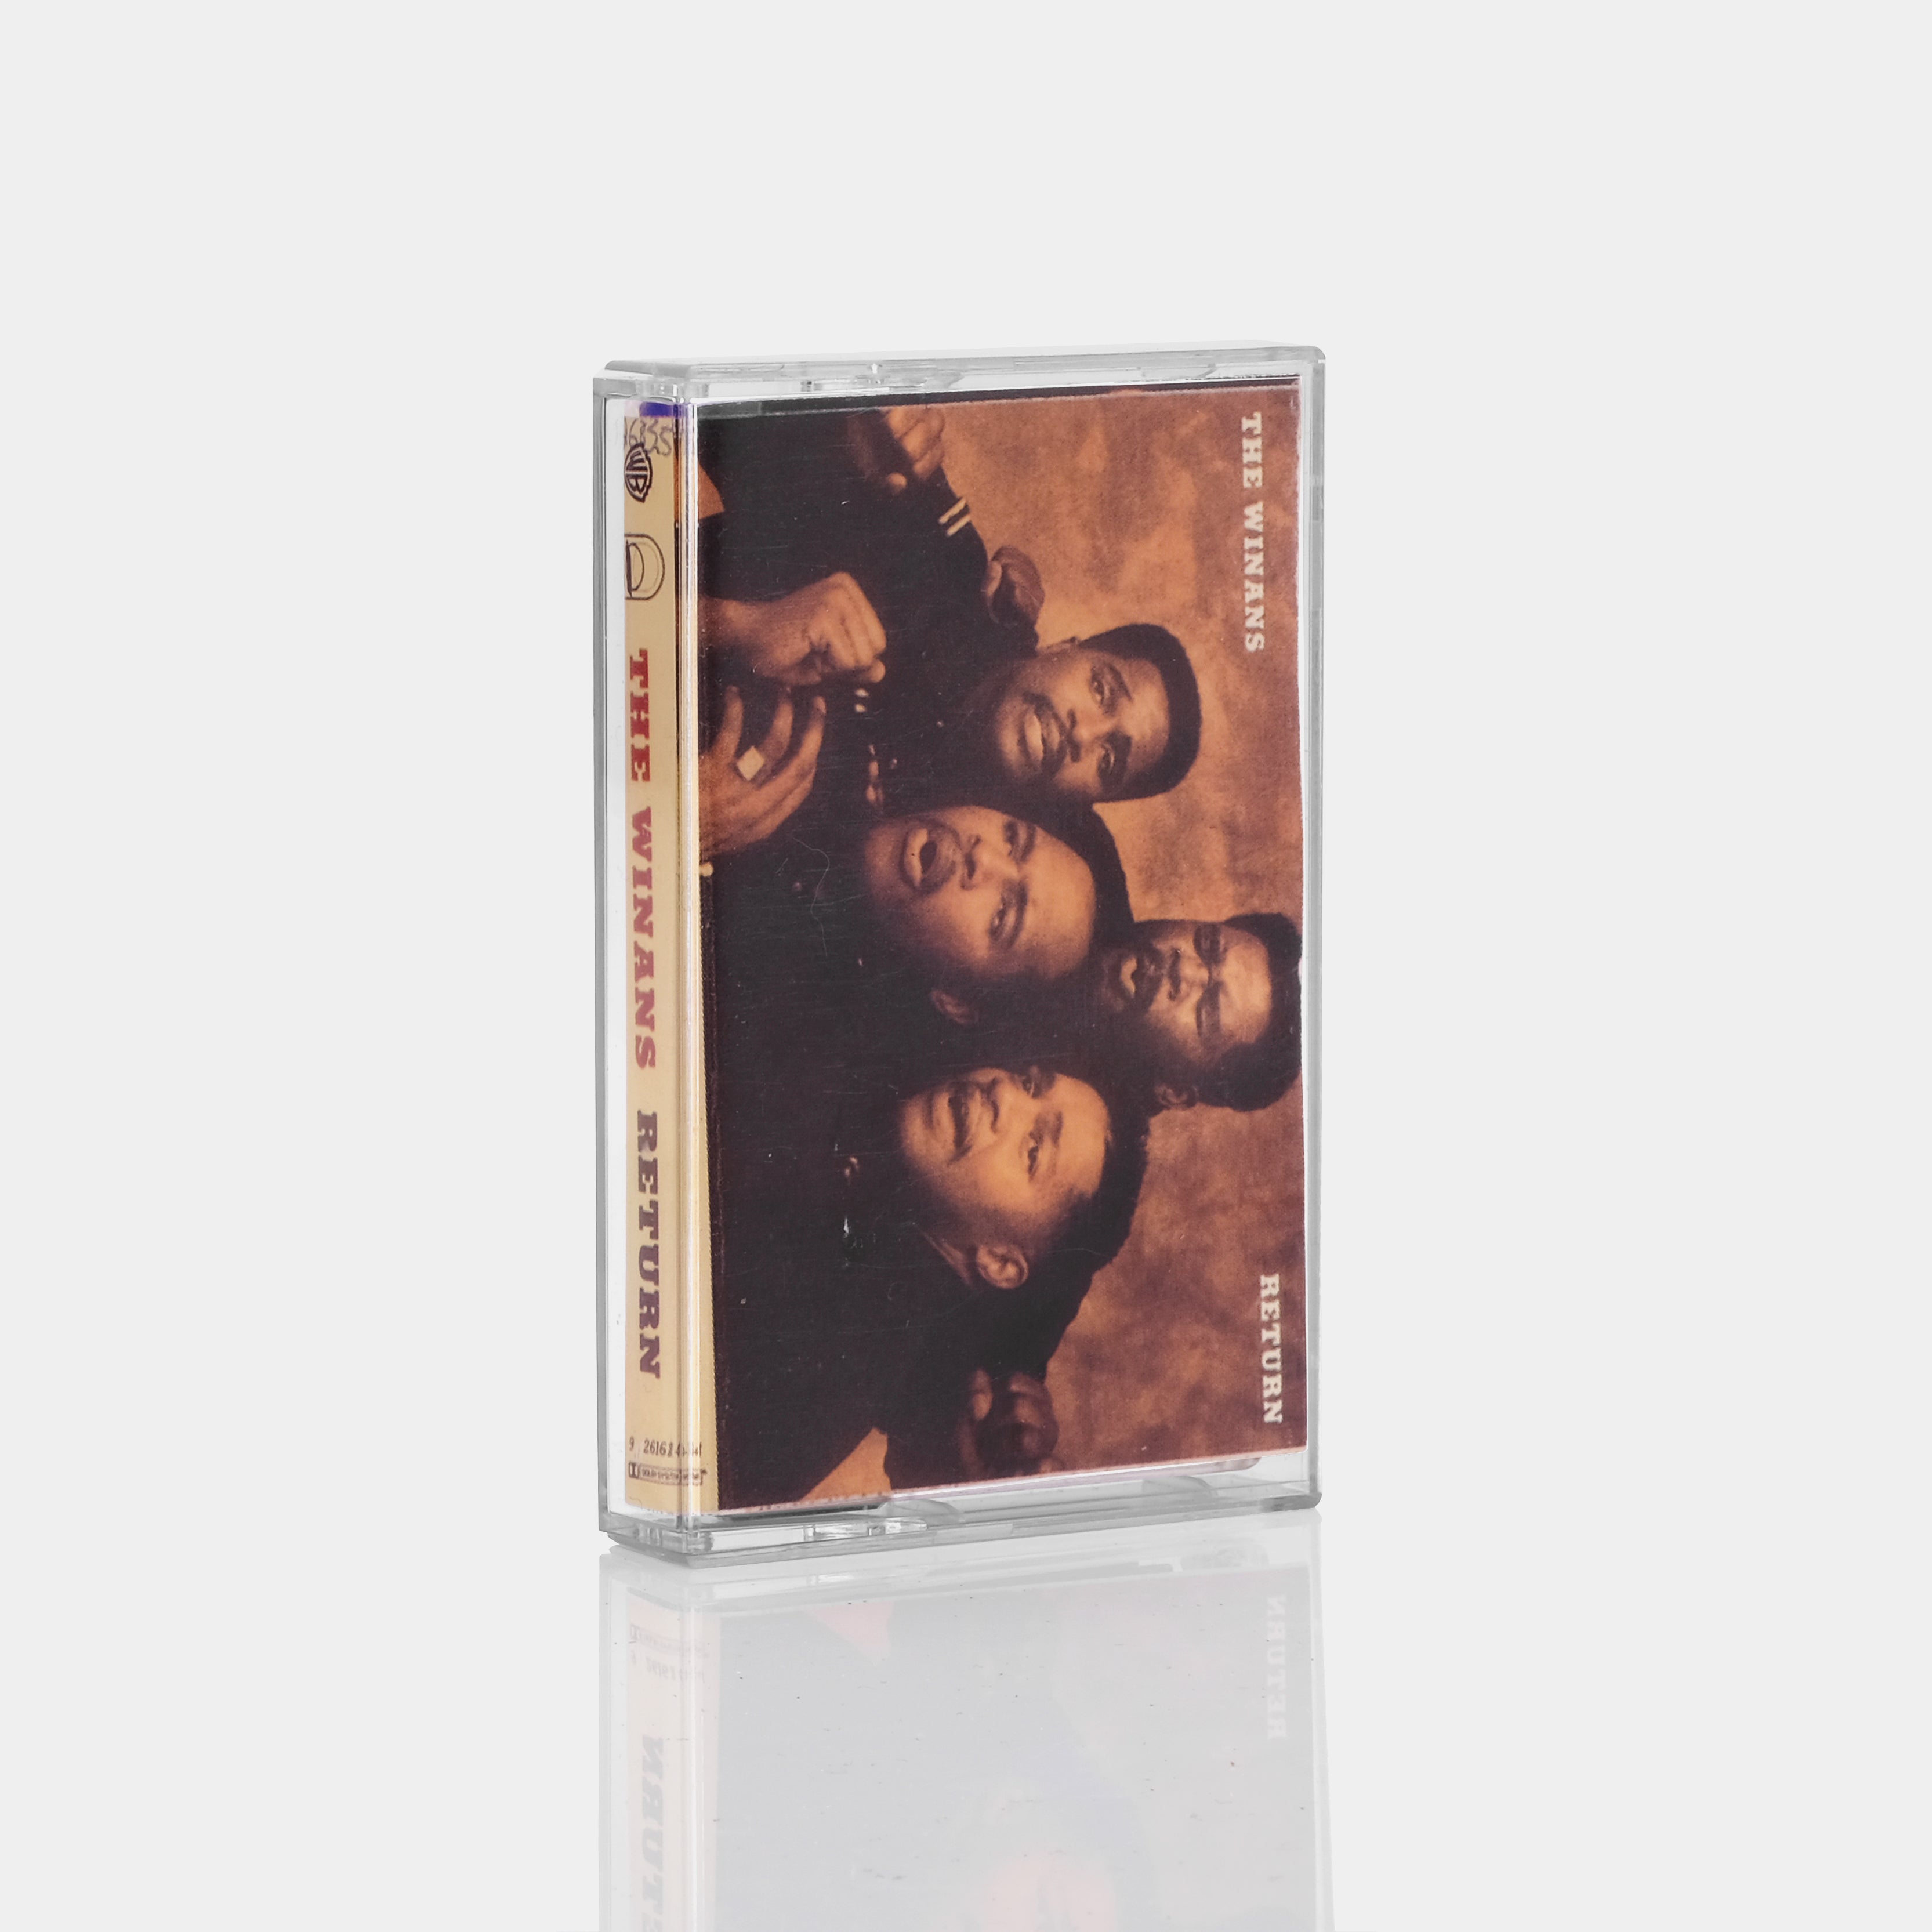 The Winans - Return Cassette Tape